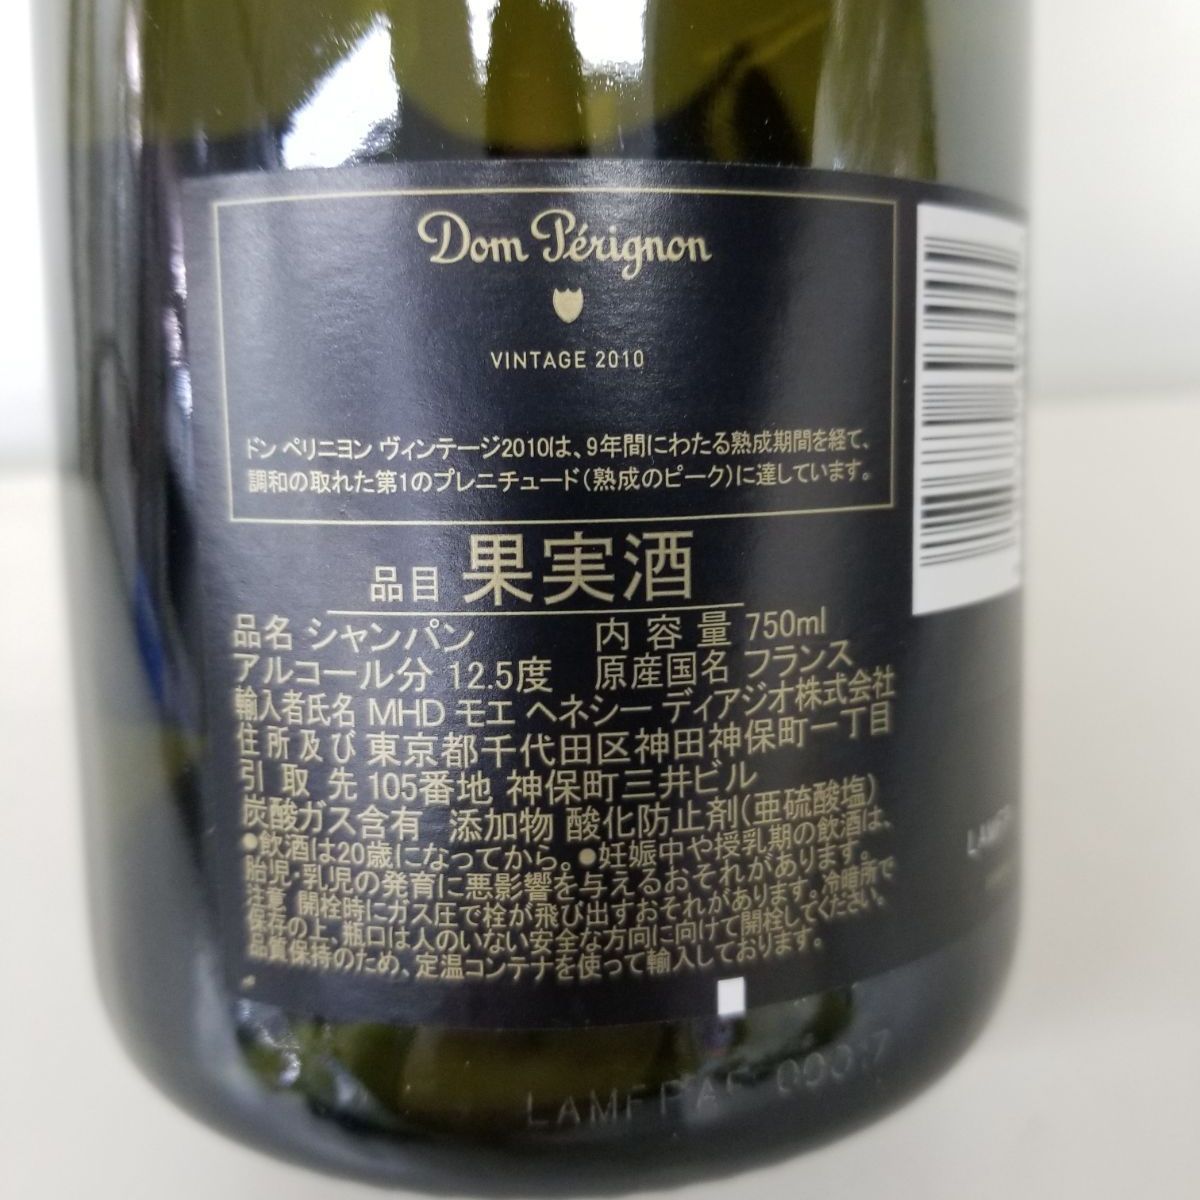 ドン・ペリニオン2010 750ml 新品未開封ドンペリvintage2010 - シャンパン/スパークリングワイン